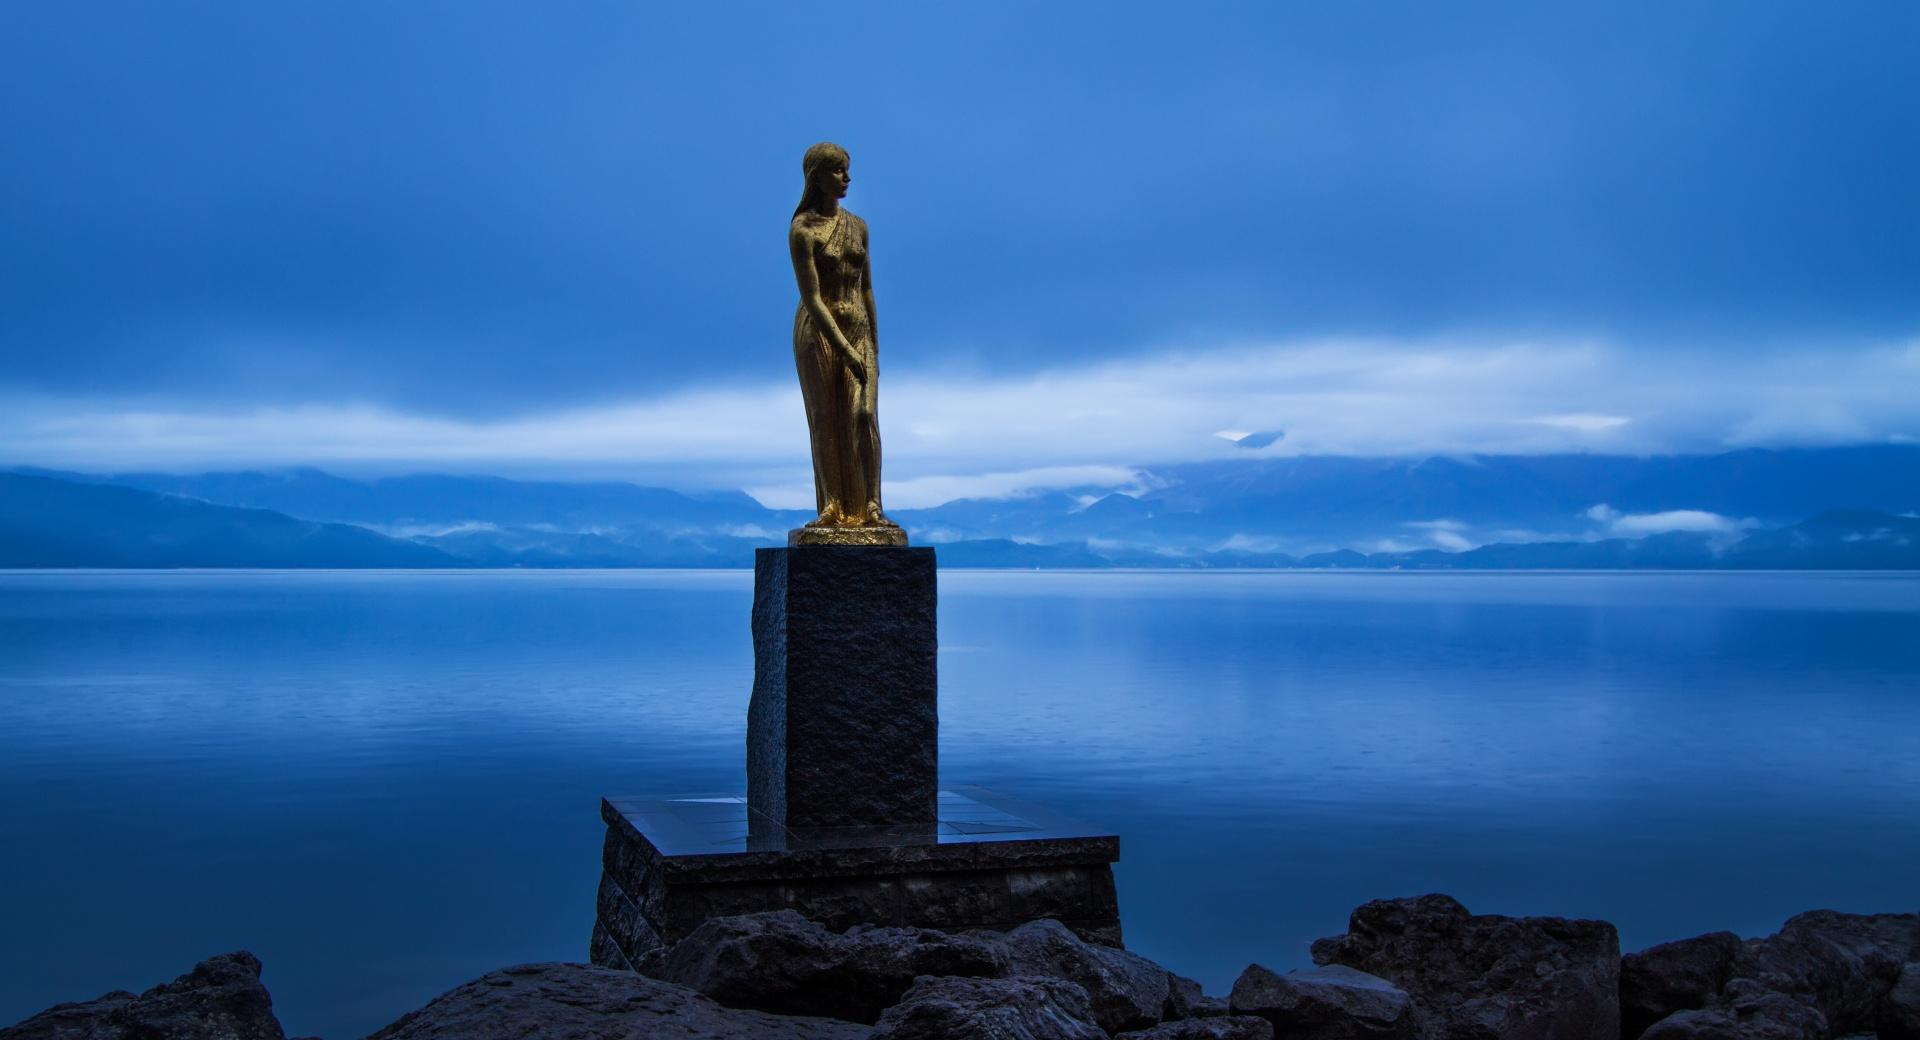 Statue of Tatsuko, Lake Tazawa at 640 x 960 iPhone 4 size wallpapers HD quality